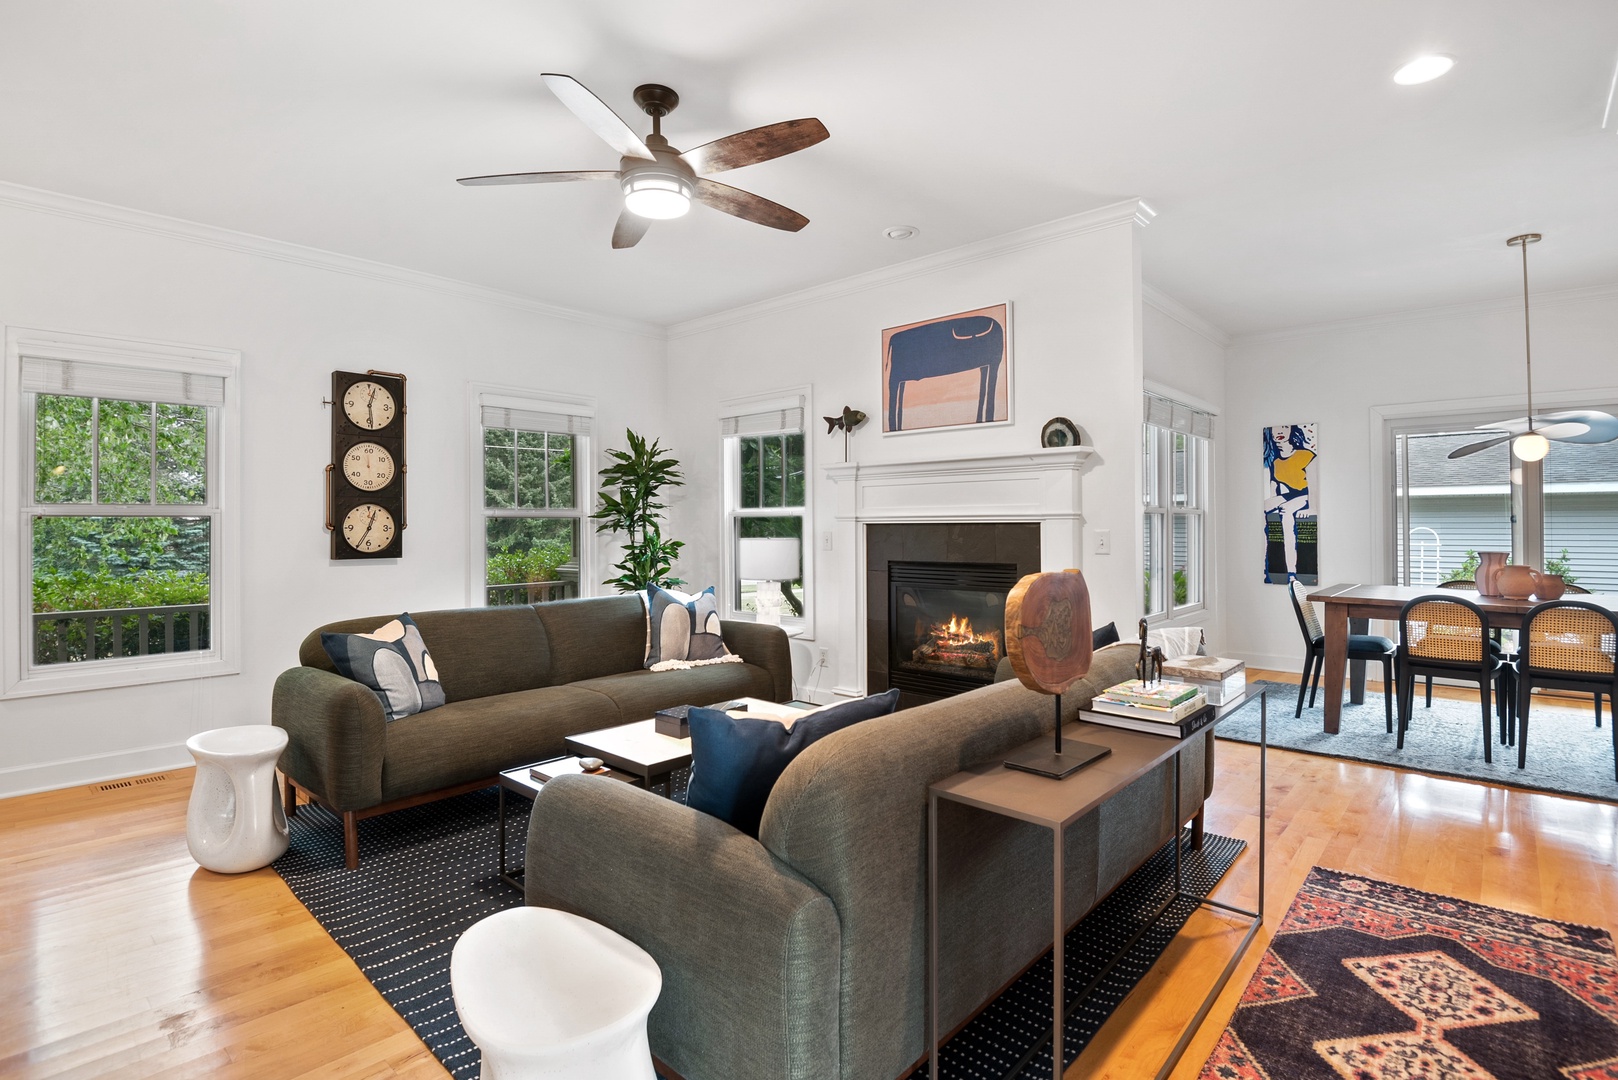 Douglas Darling’s professionally designed interior emphasizes stylish, yet cozy furnishings.